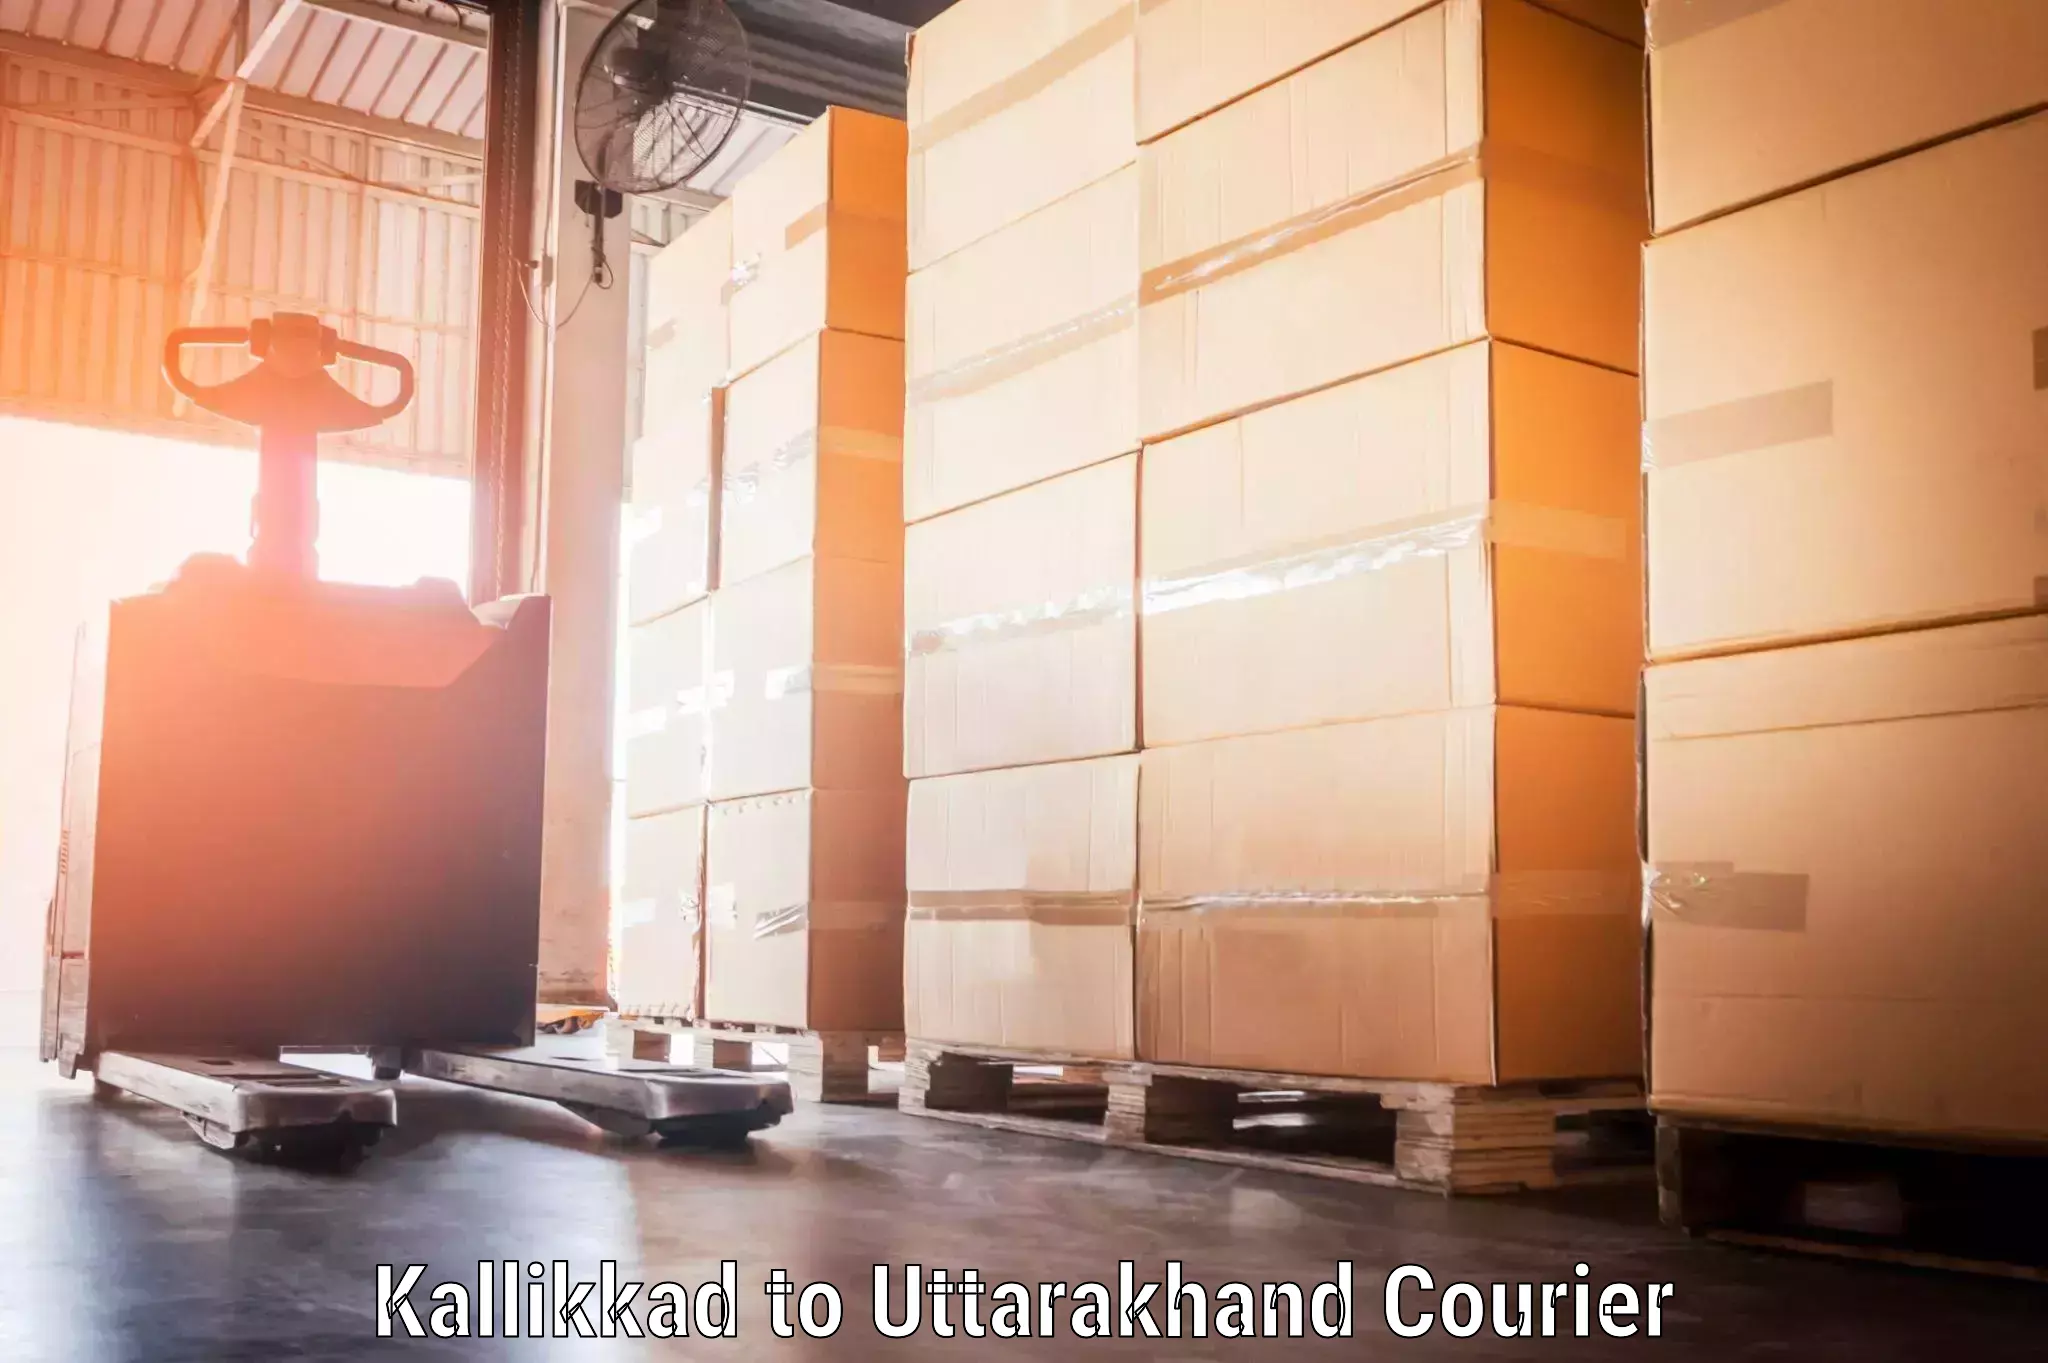 Baggage shipping service Kallikkad to Gumkhal